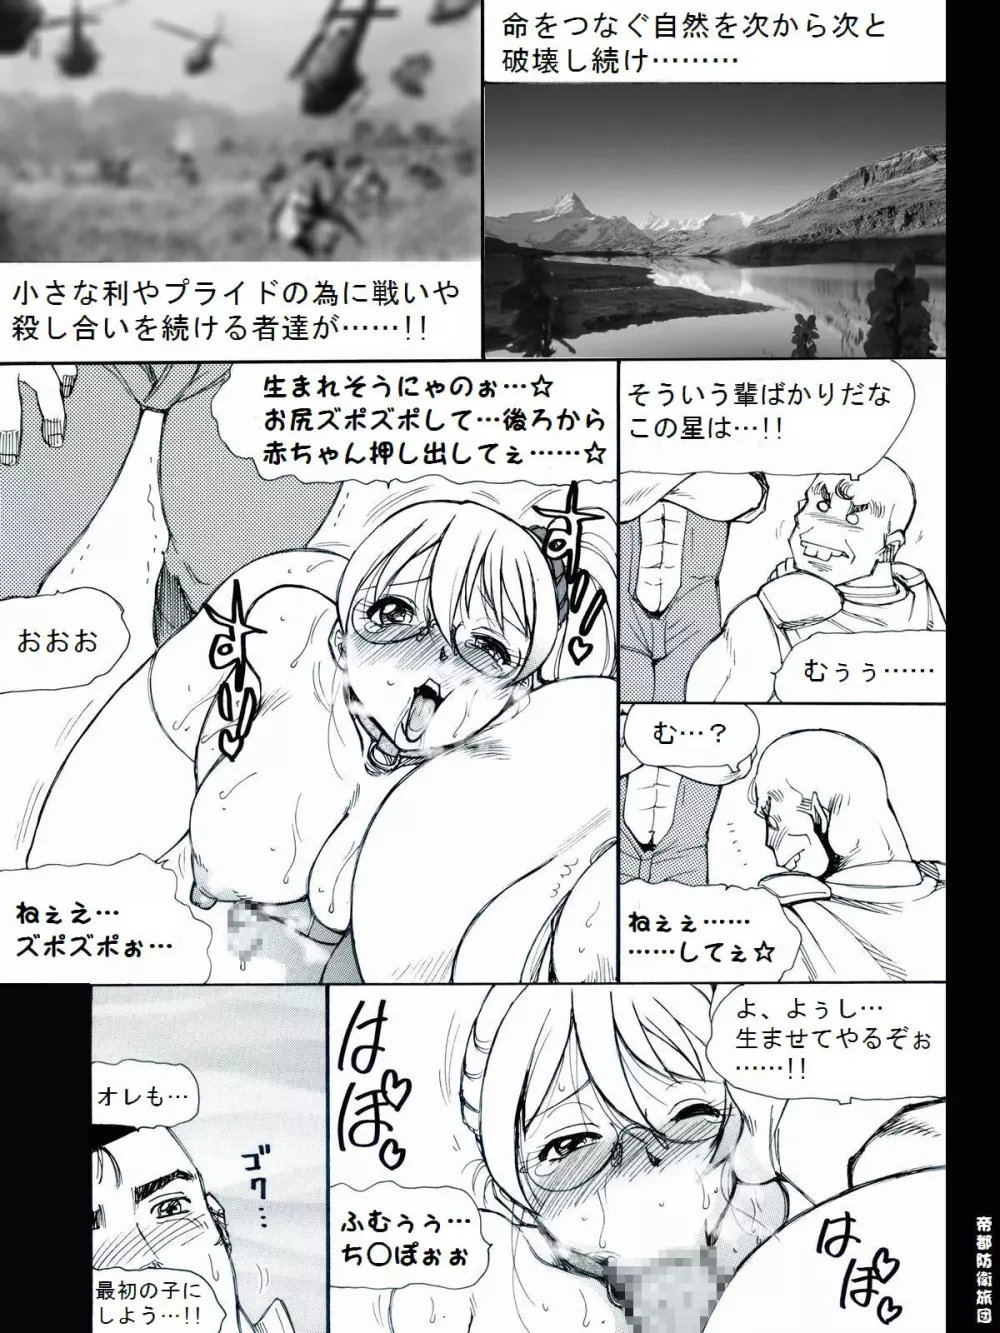 [帝都防衛旅団] RTKBOOK 9-3 「M○Xいぢり(3) 『PANPAN-MAN』」 - page19